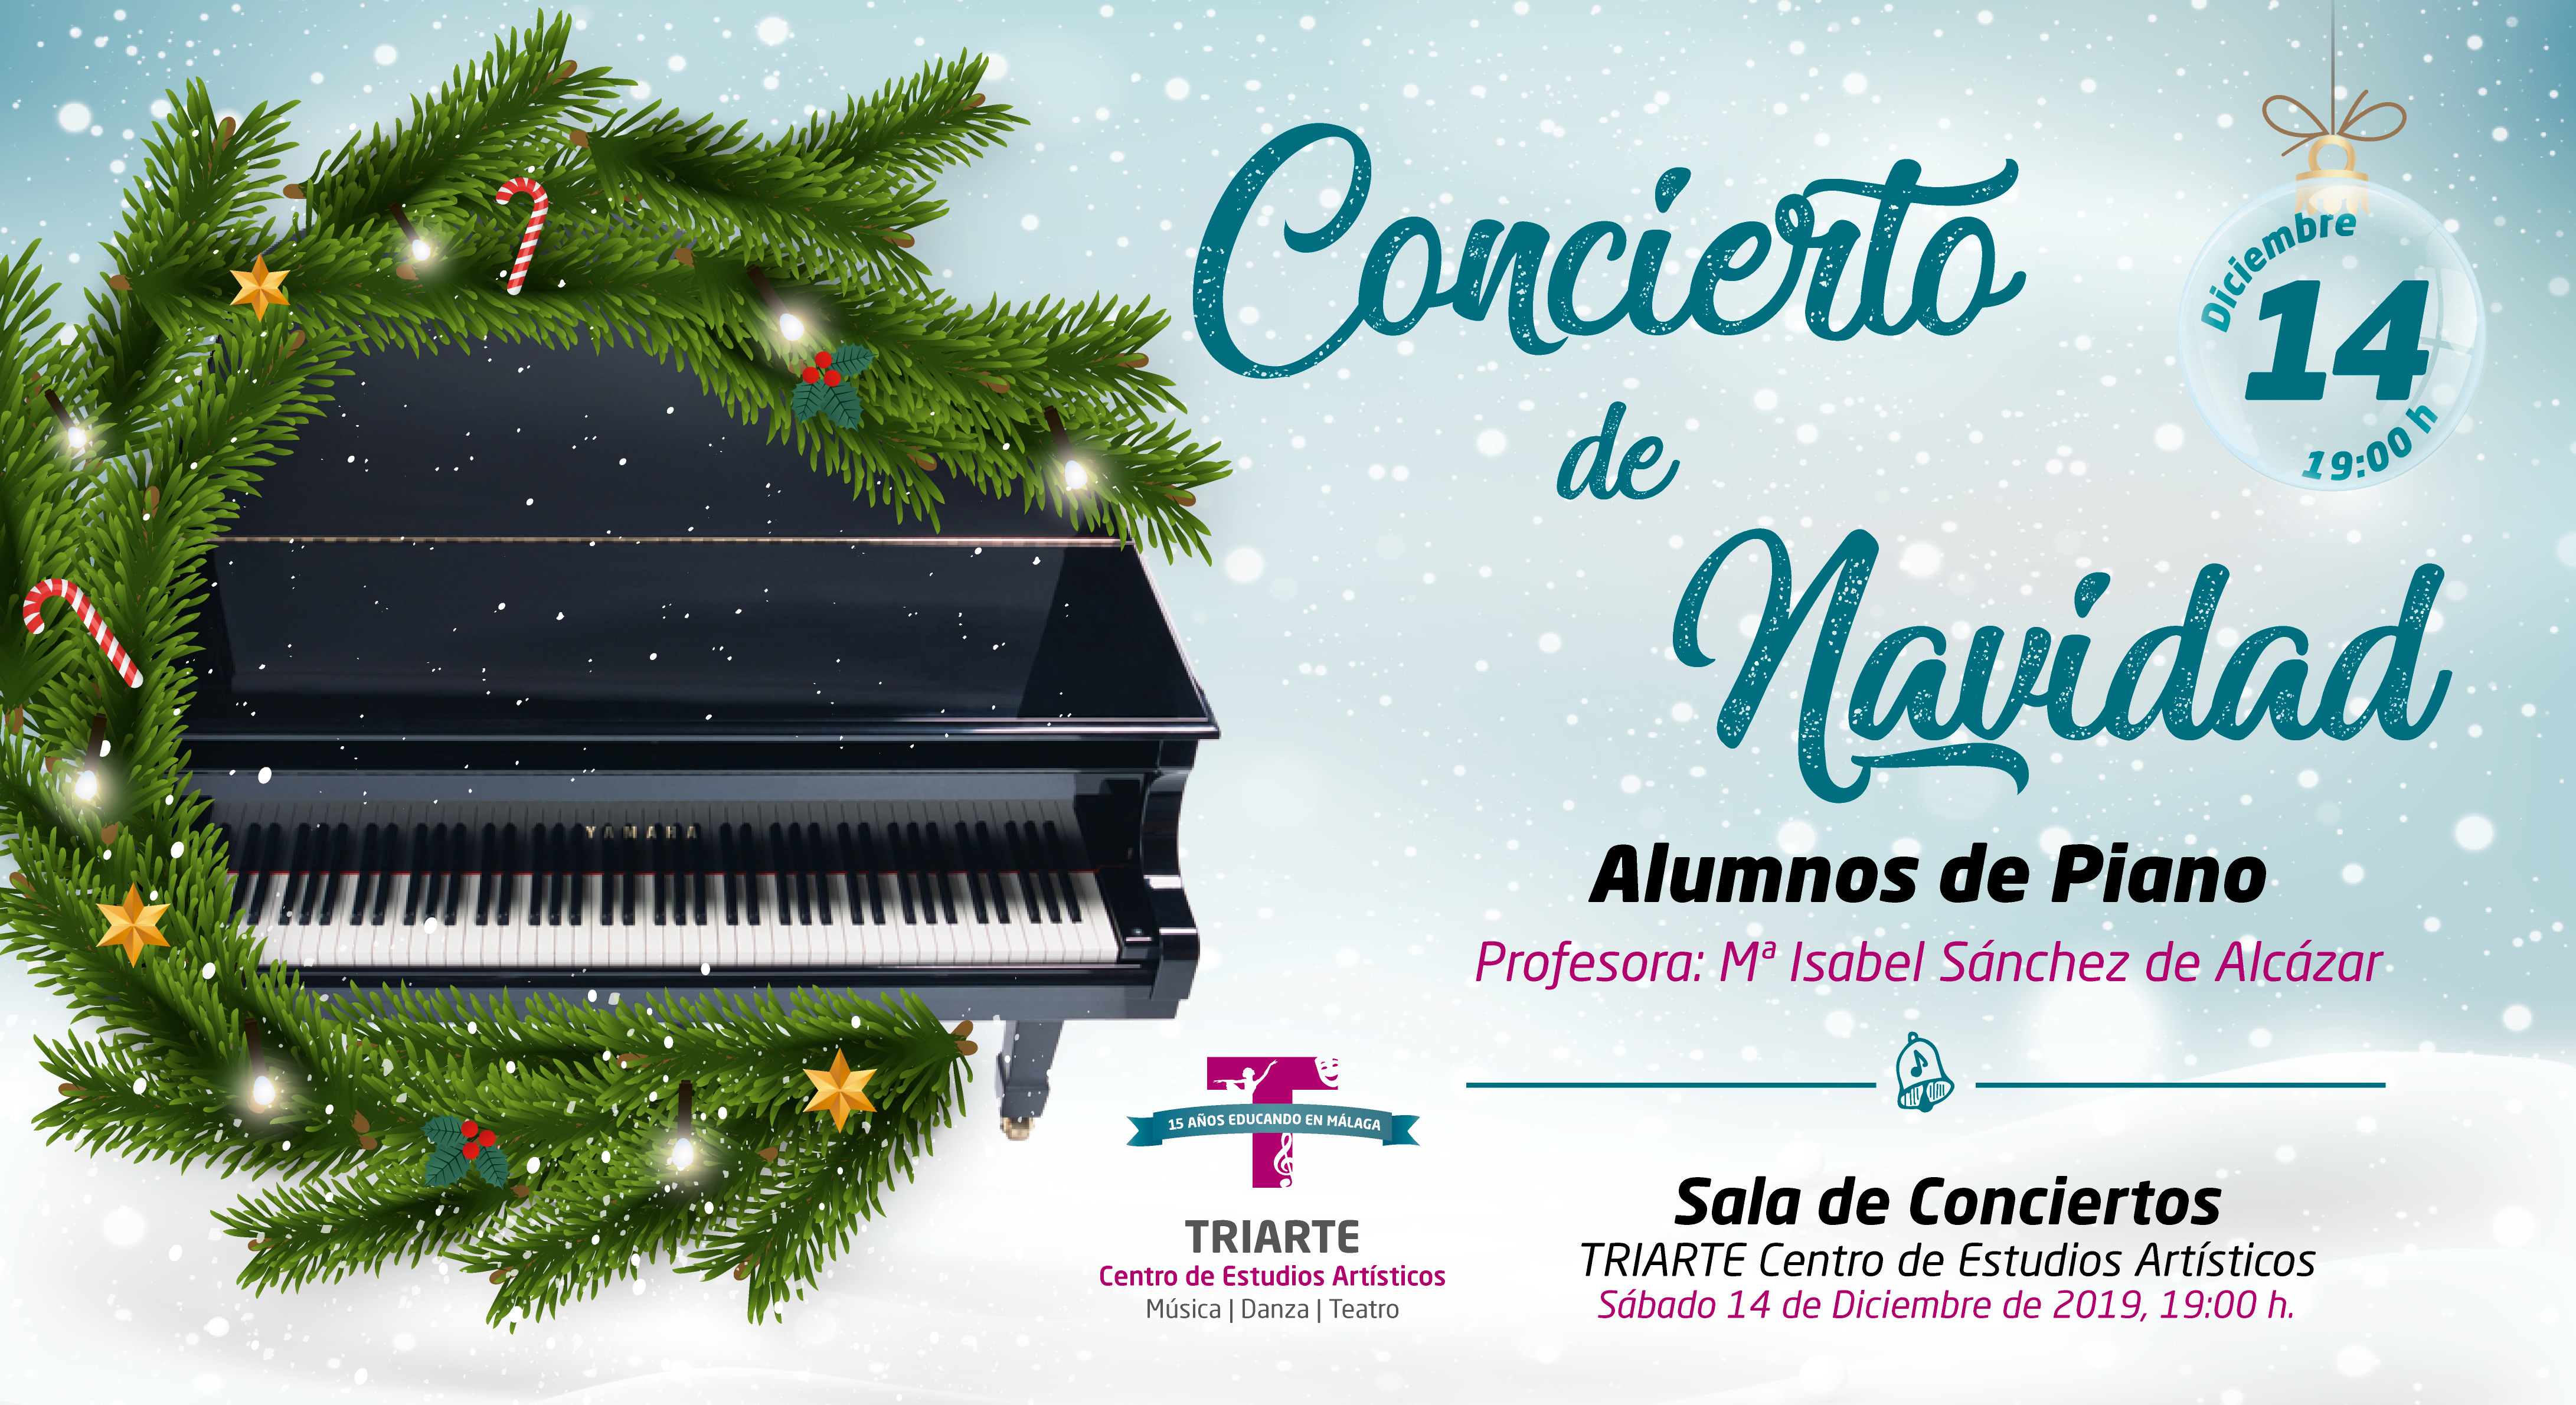 Concierto de Piano - Navidad 2019 - Triarte. Alumnos de María Isabel Sánchez de Alcázar.